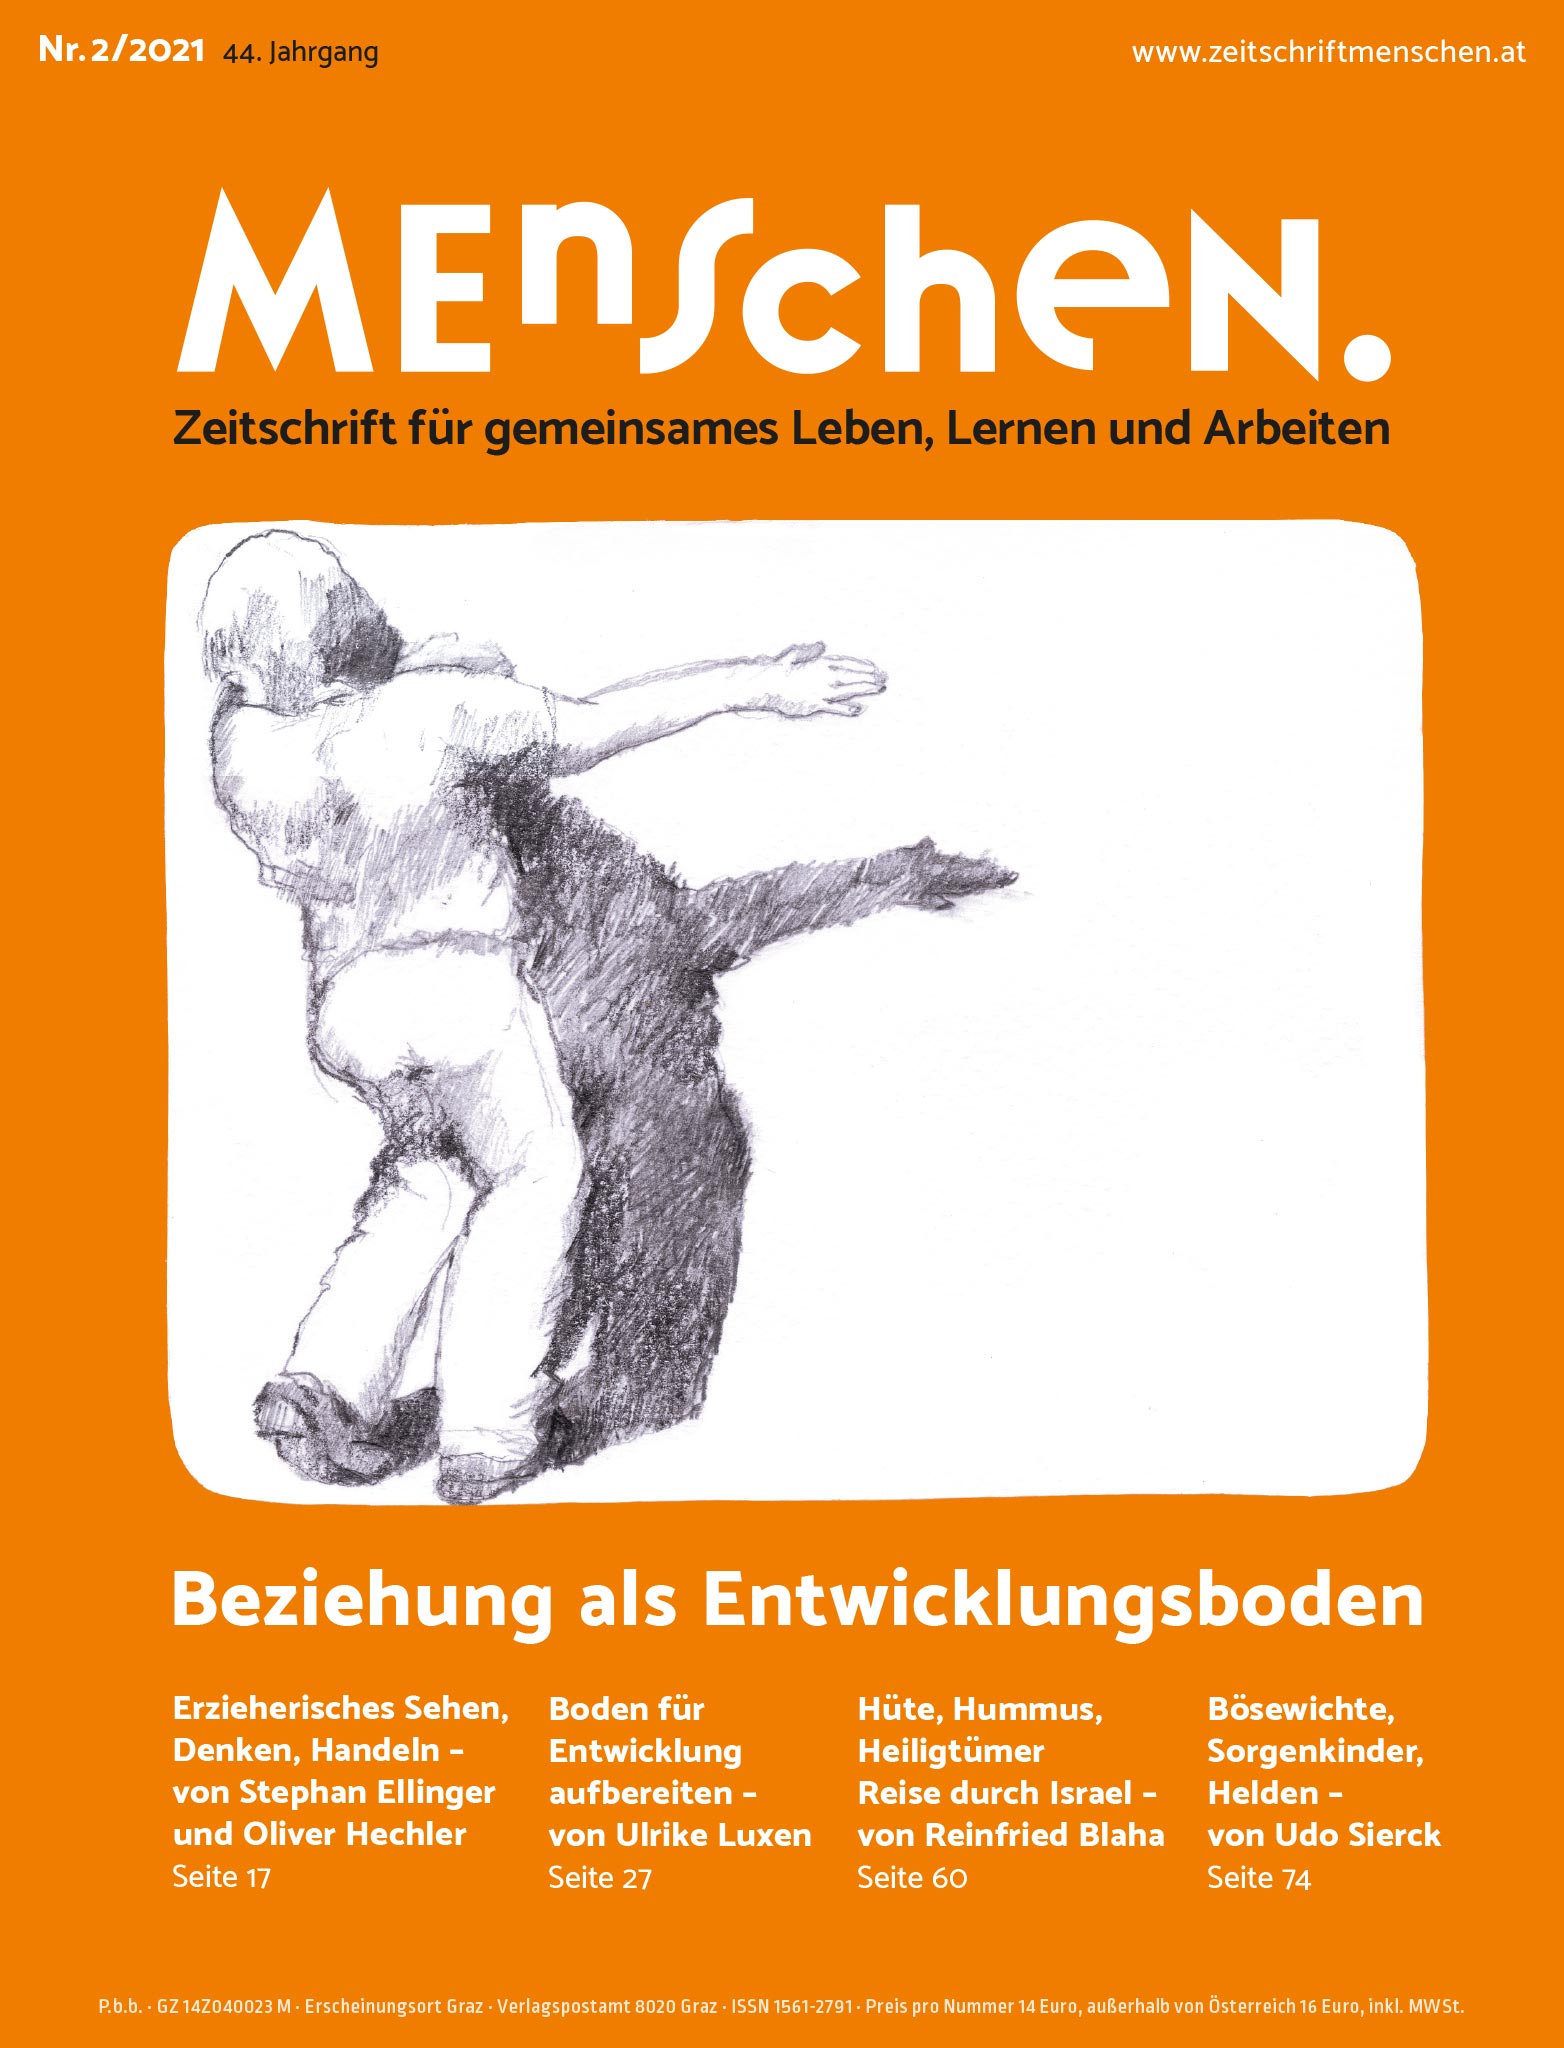 Titelbild der Zeitschrift BEHINDERTE MENSCHEN, Ausgabe 2/2021 "Beziehung als Entwicklungsboden"